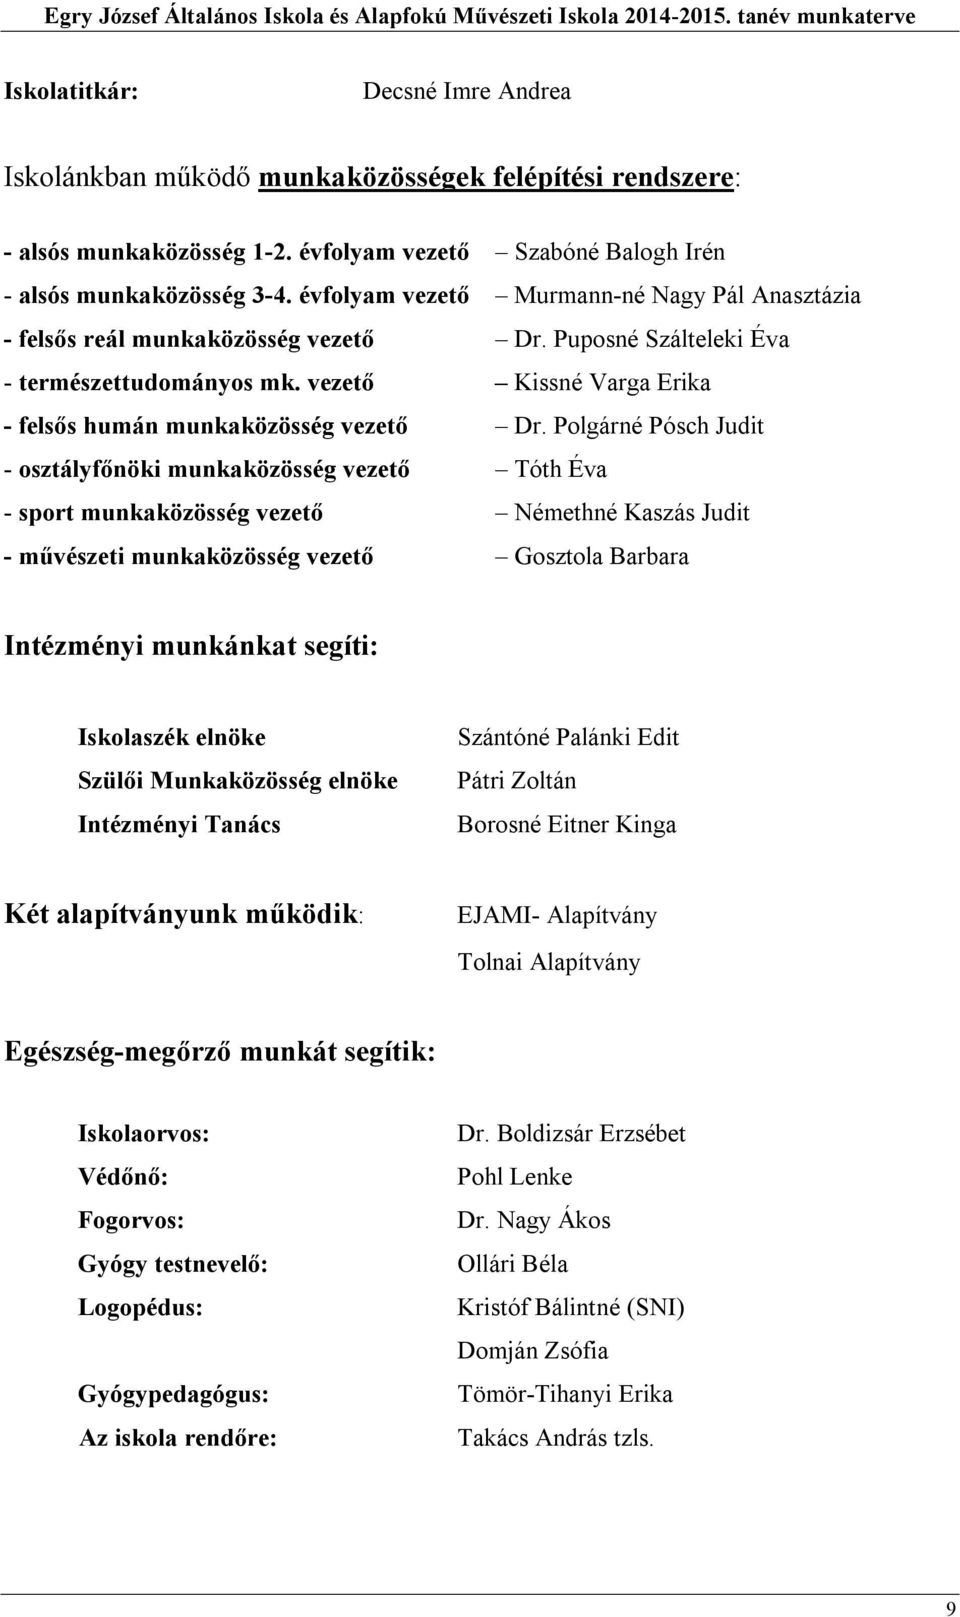 Egry József Általános Iskola és Alapfokú Művészeti Iskola. munkaterve 2014/  PDF Ingyenes letöltés